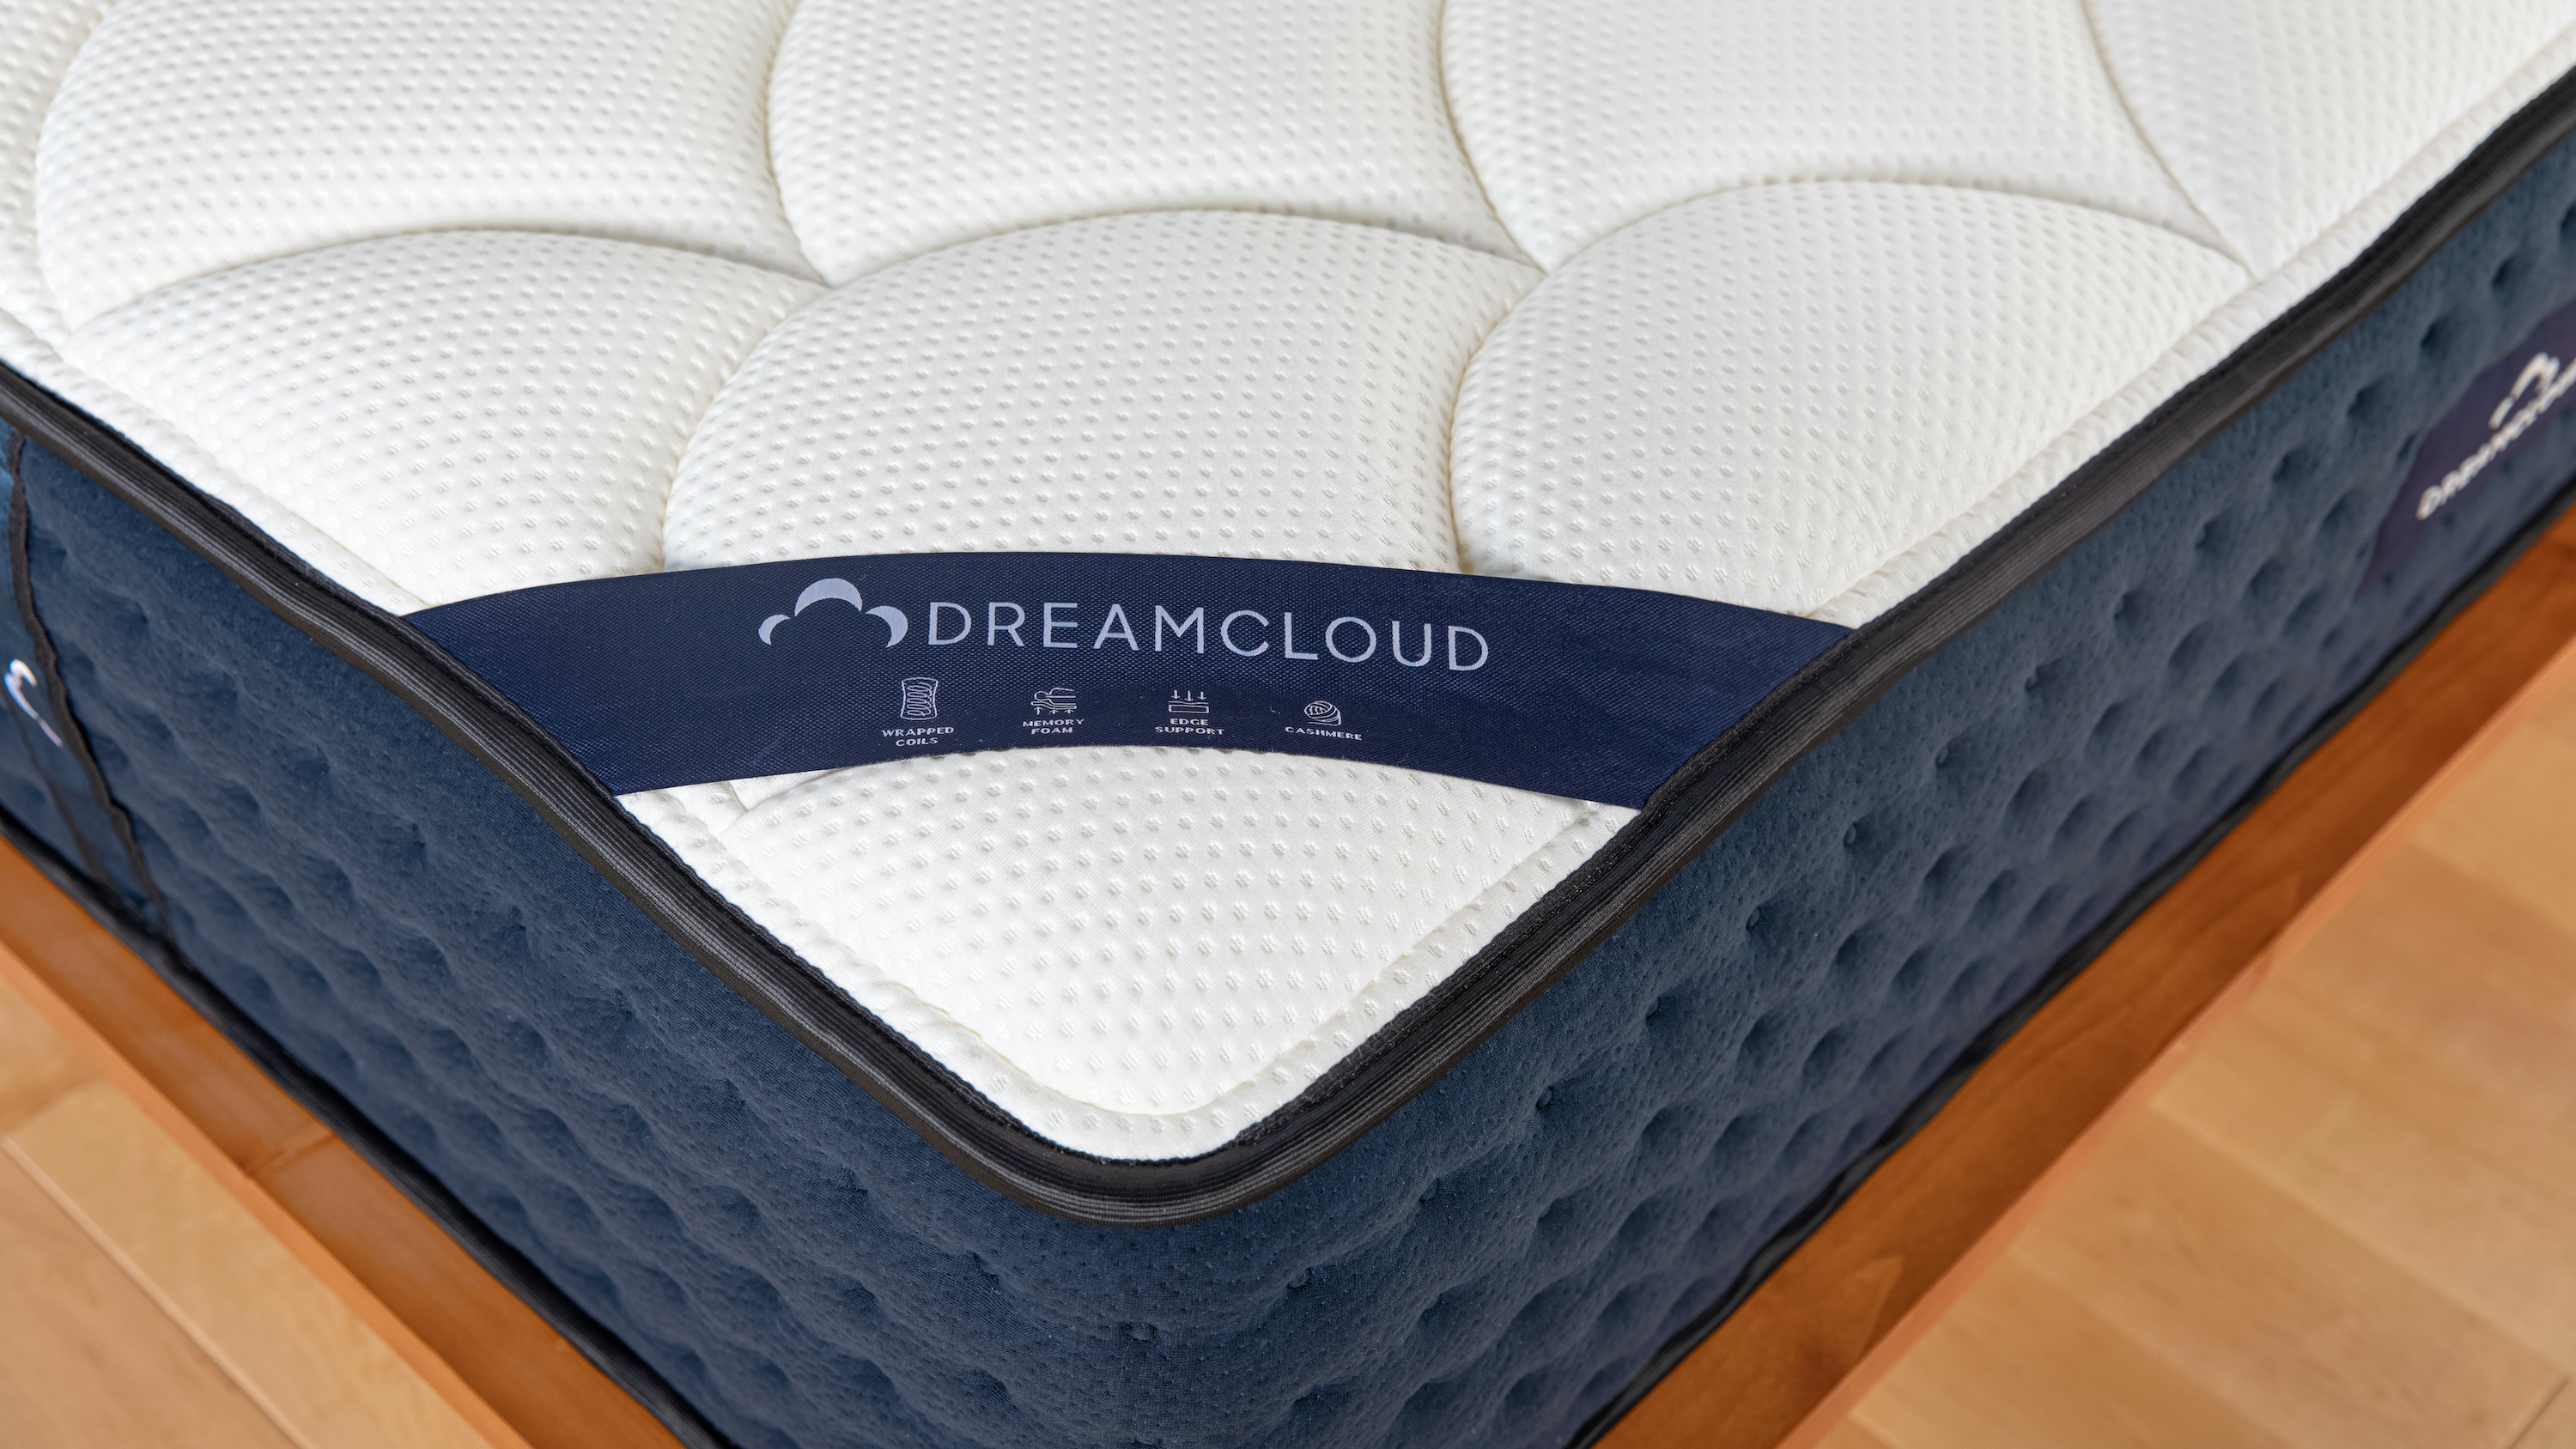 Imaginea arată husa căptușită și matlasată a saltelei DreamCloud